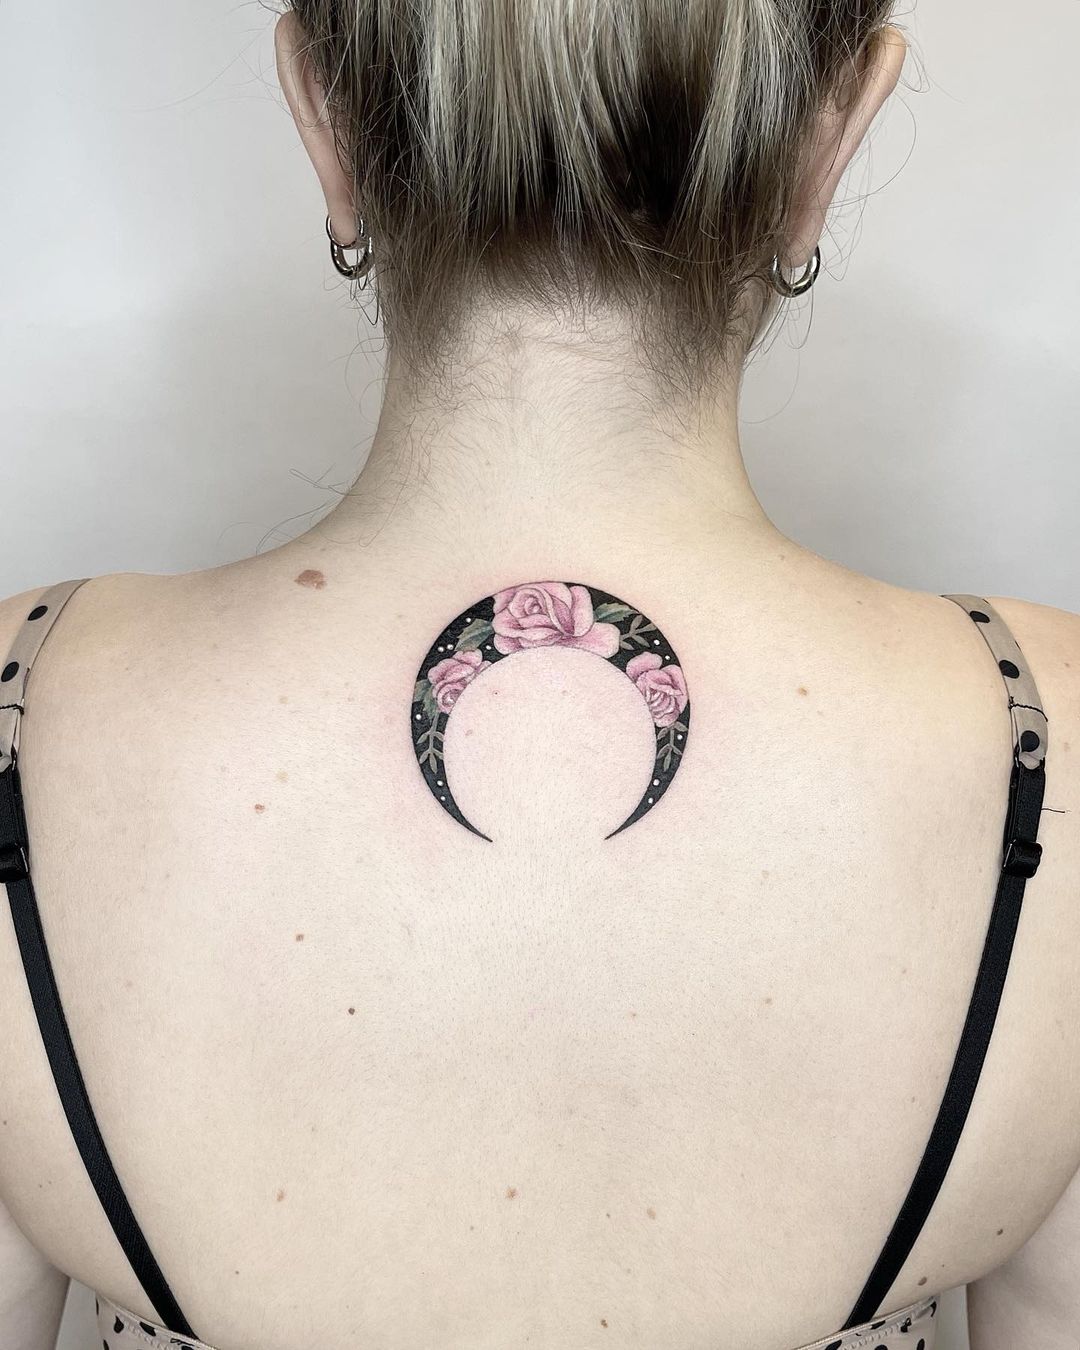 moon-tattoo-with-flowers-inside-chara-kyriakidou